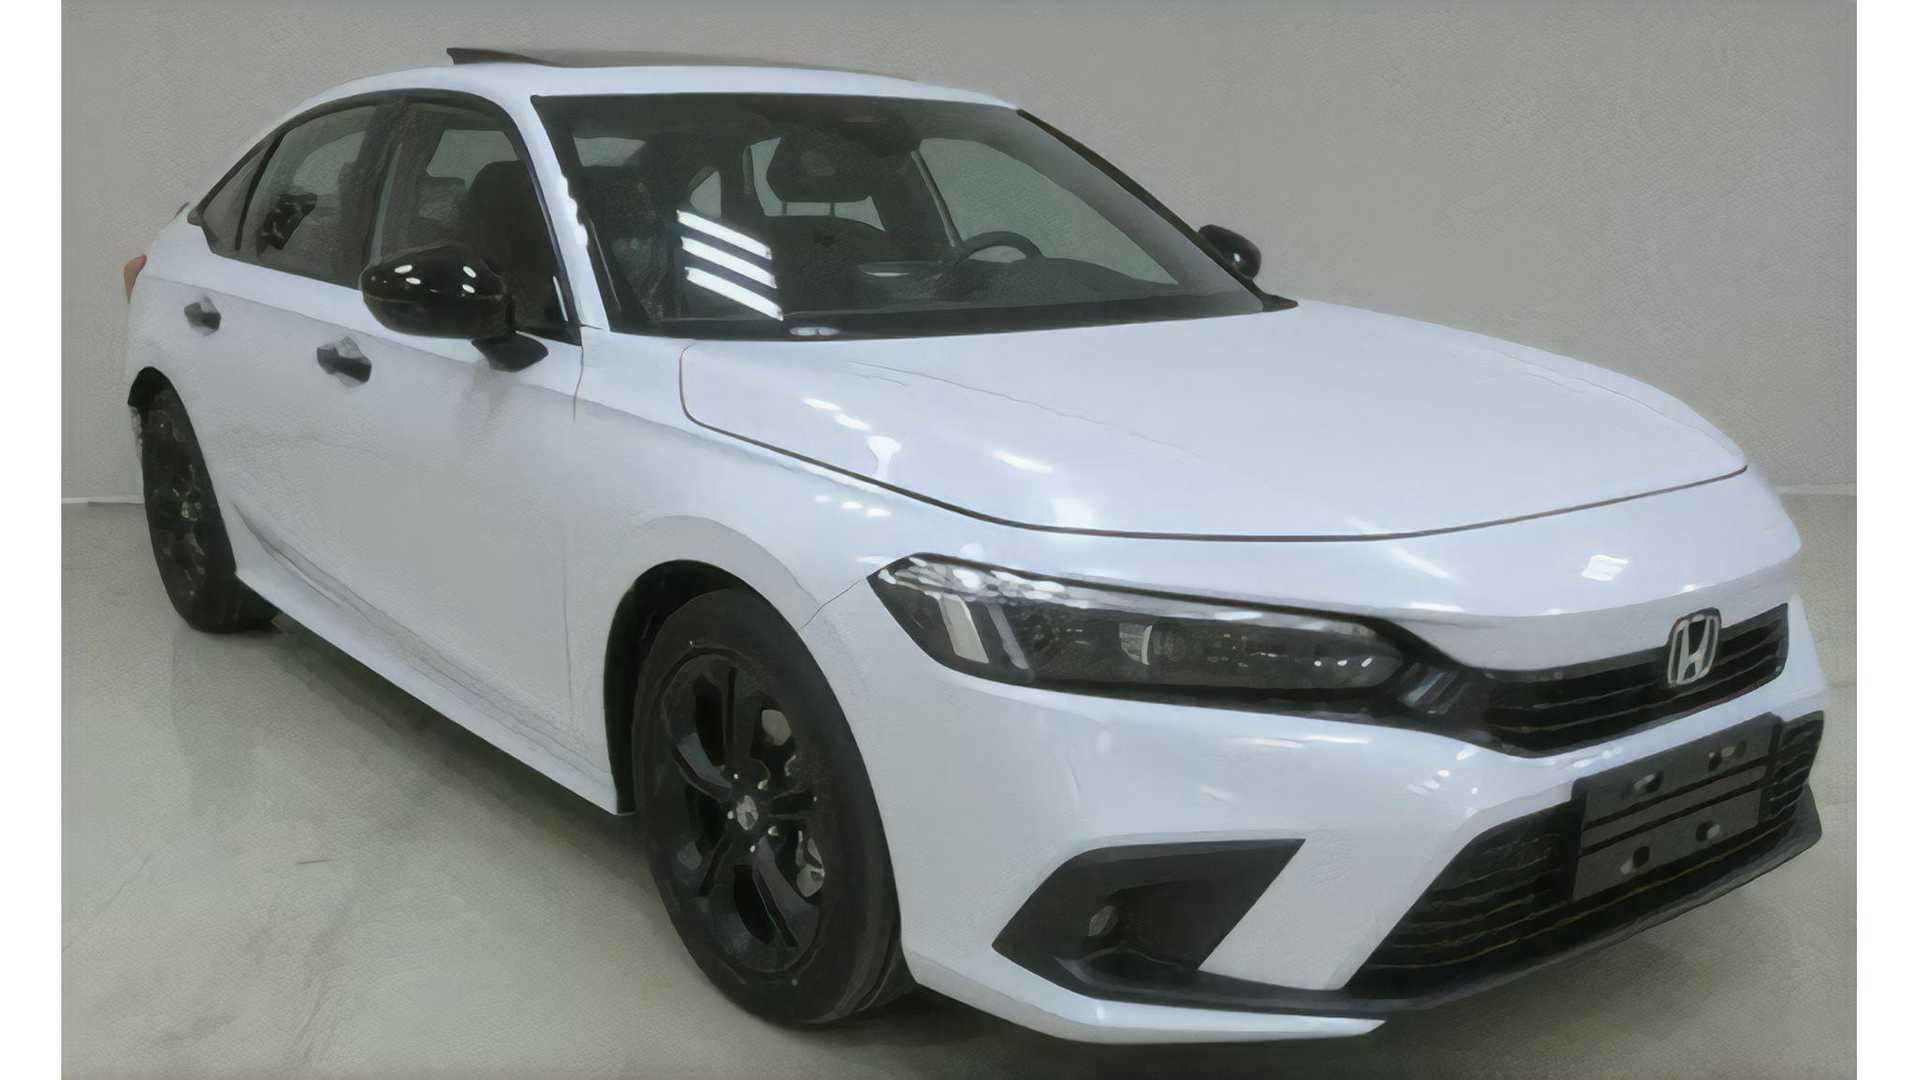 Honda Civic 2022 giá bán thông số đánh giá hình ảnh thực tế